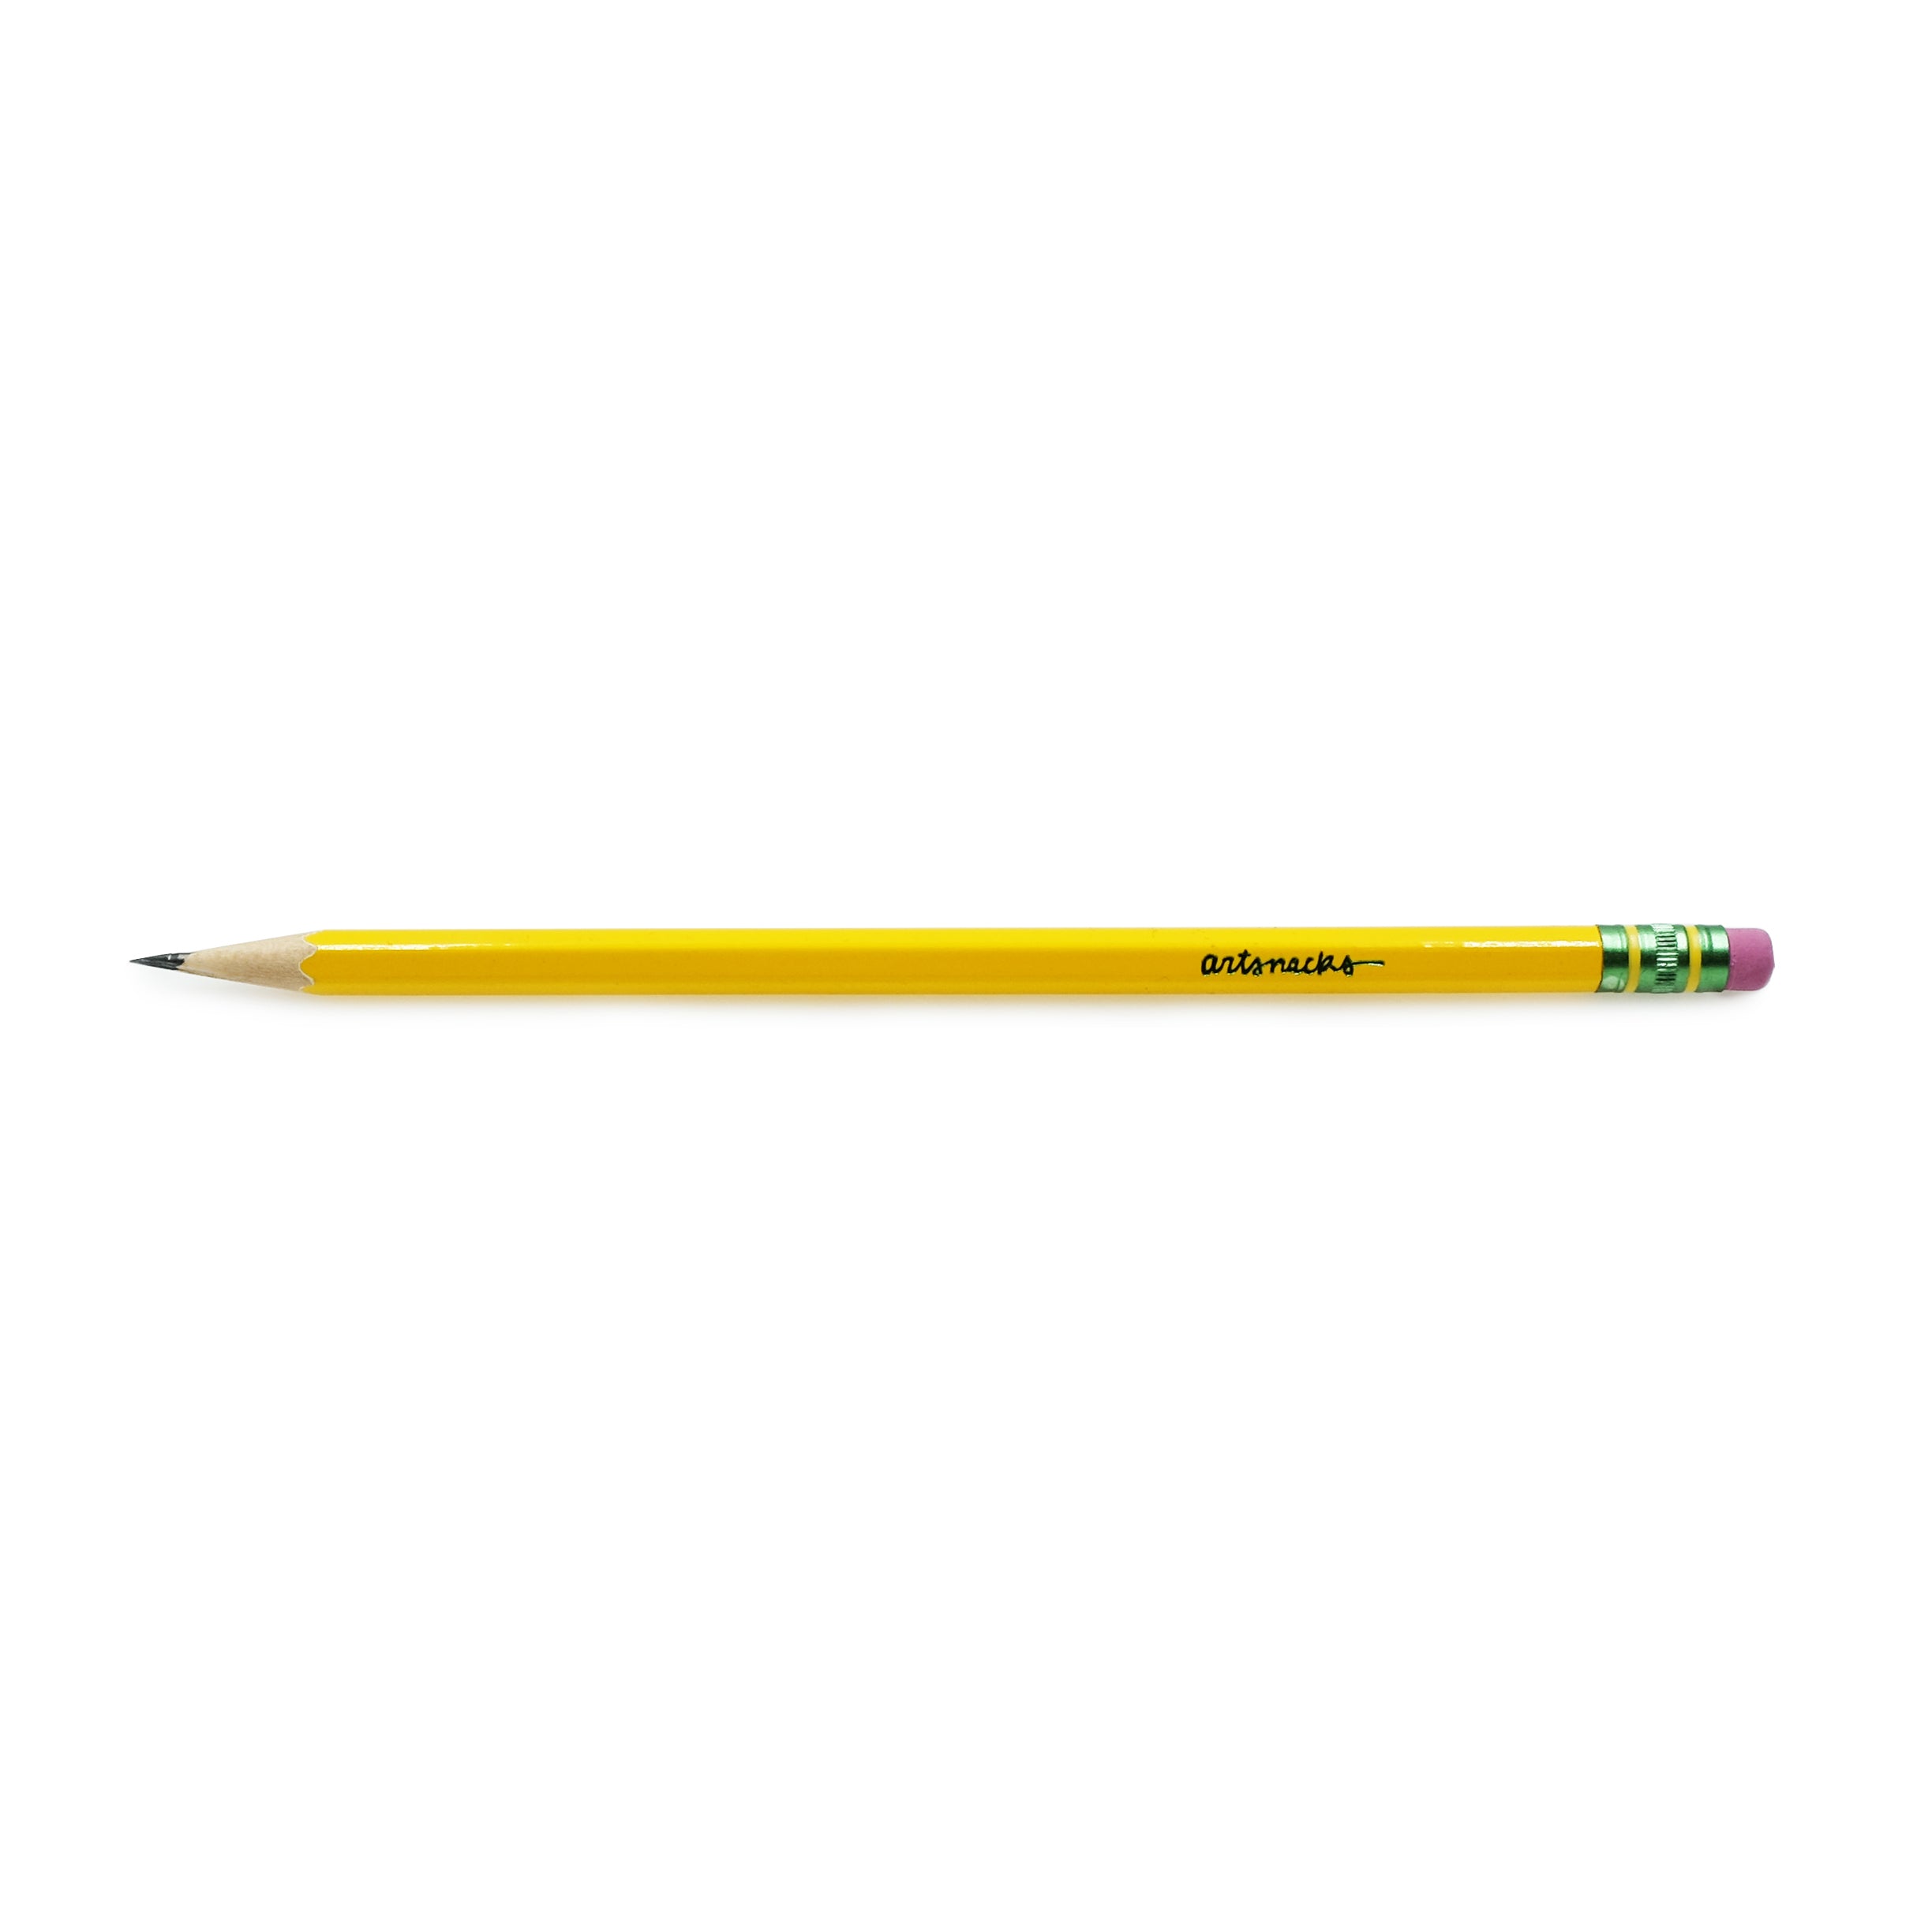 Vintage Dixon Ticonderoga Pencil Set